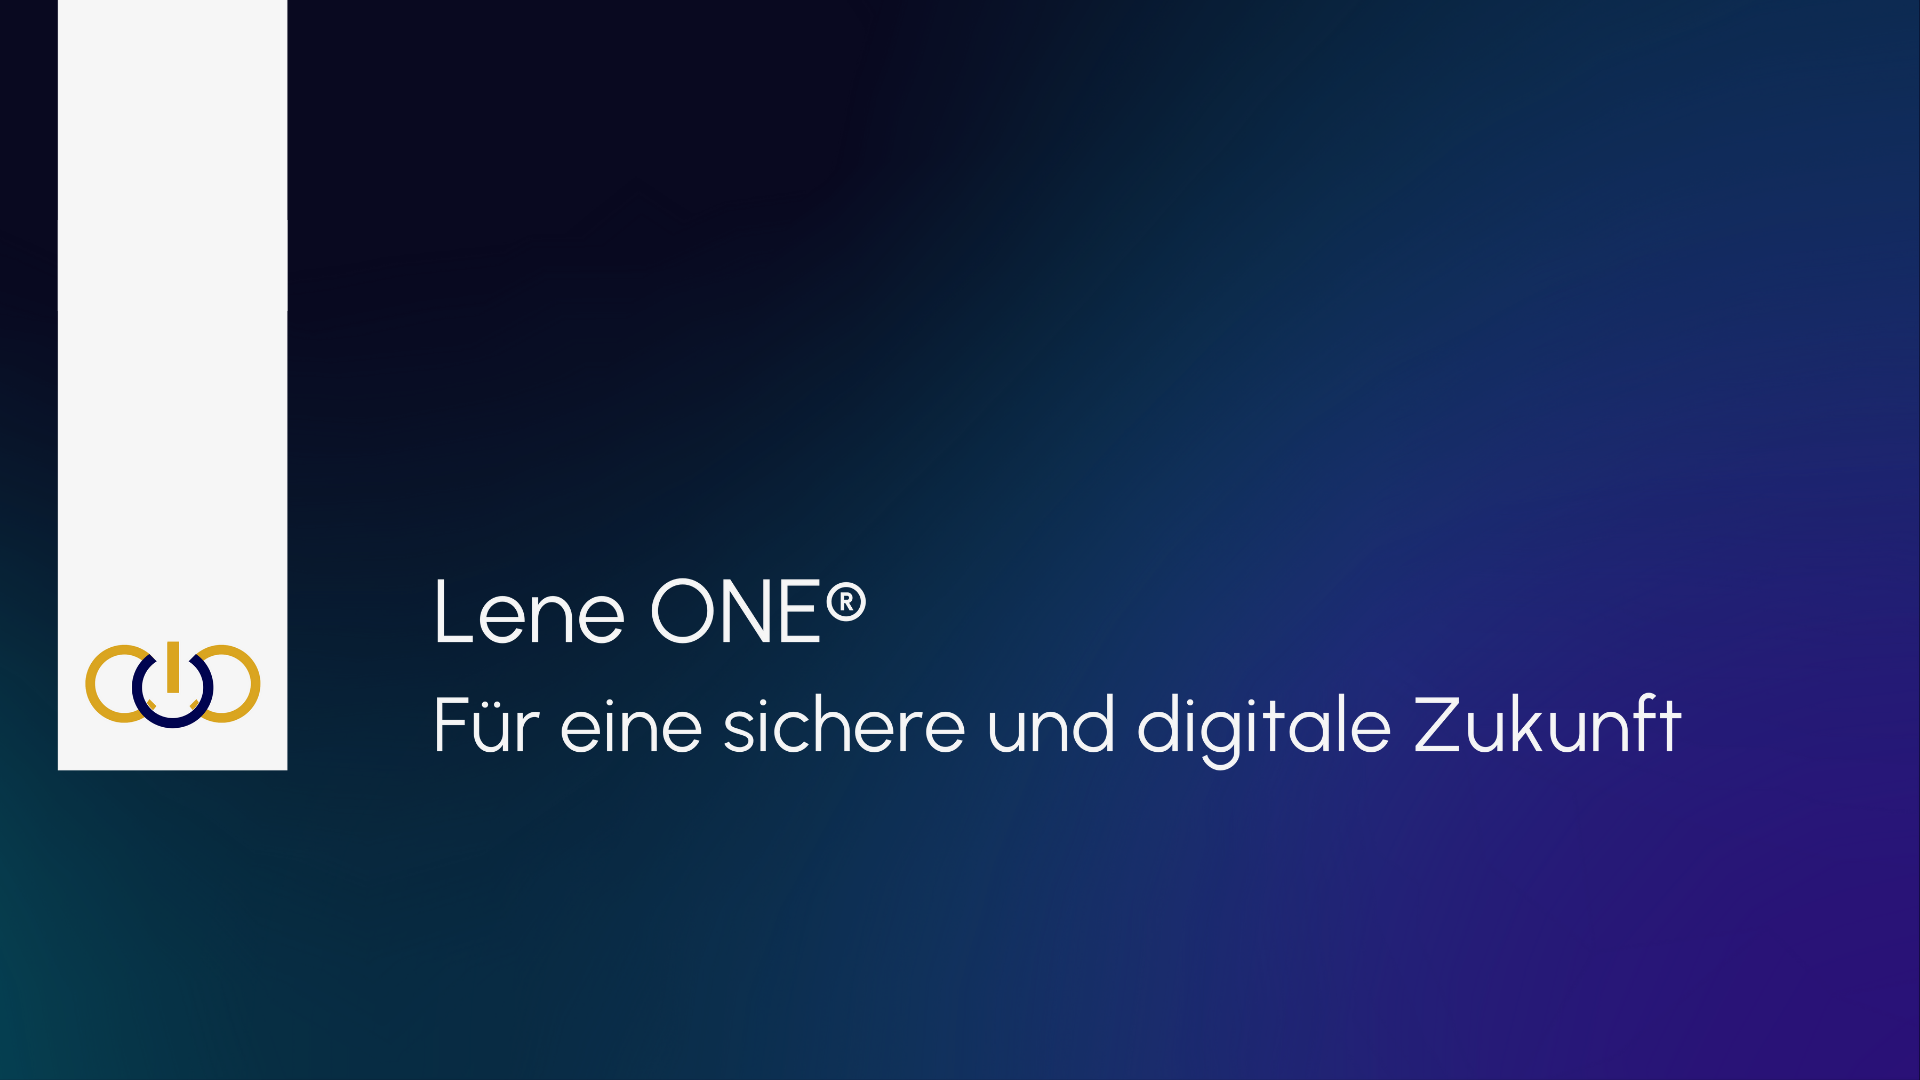 Lene ONE® / startup von Heilbronn / Background